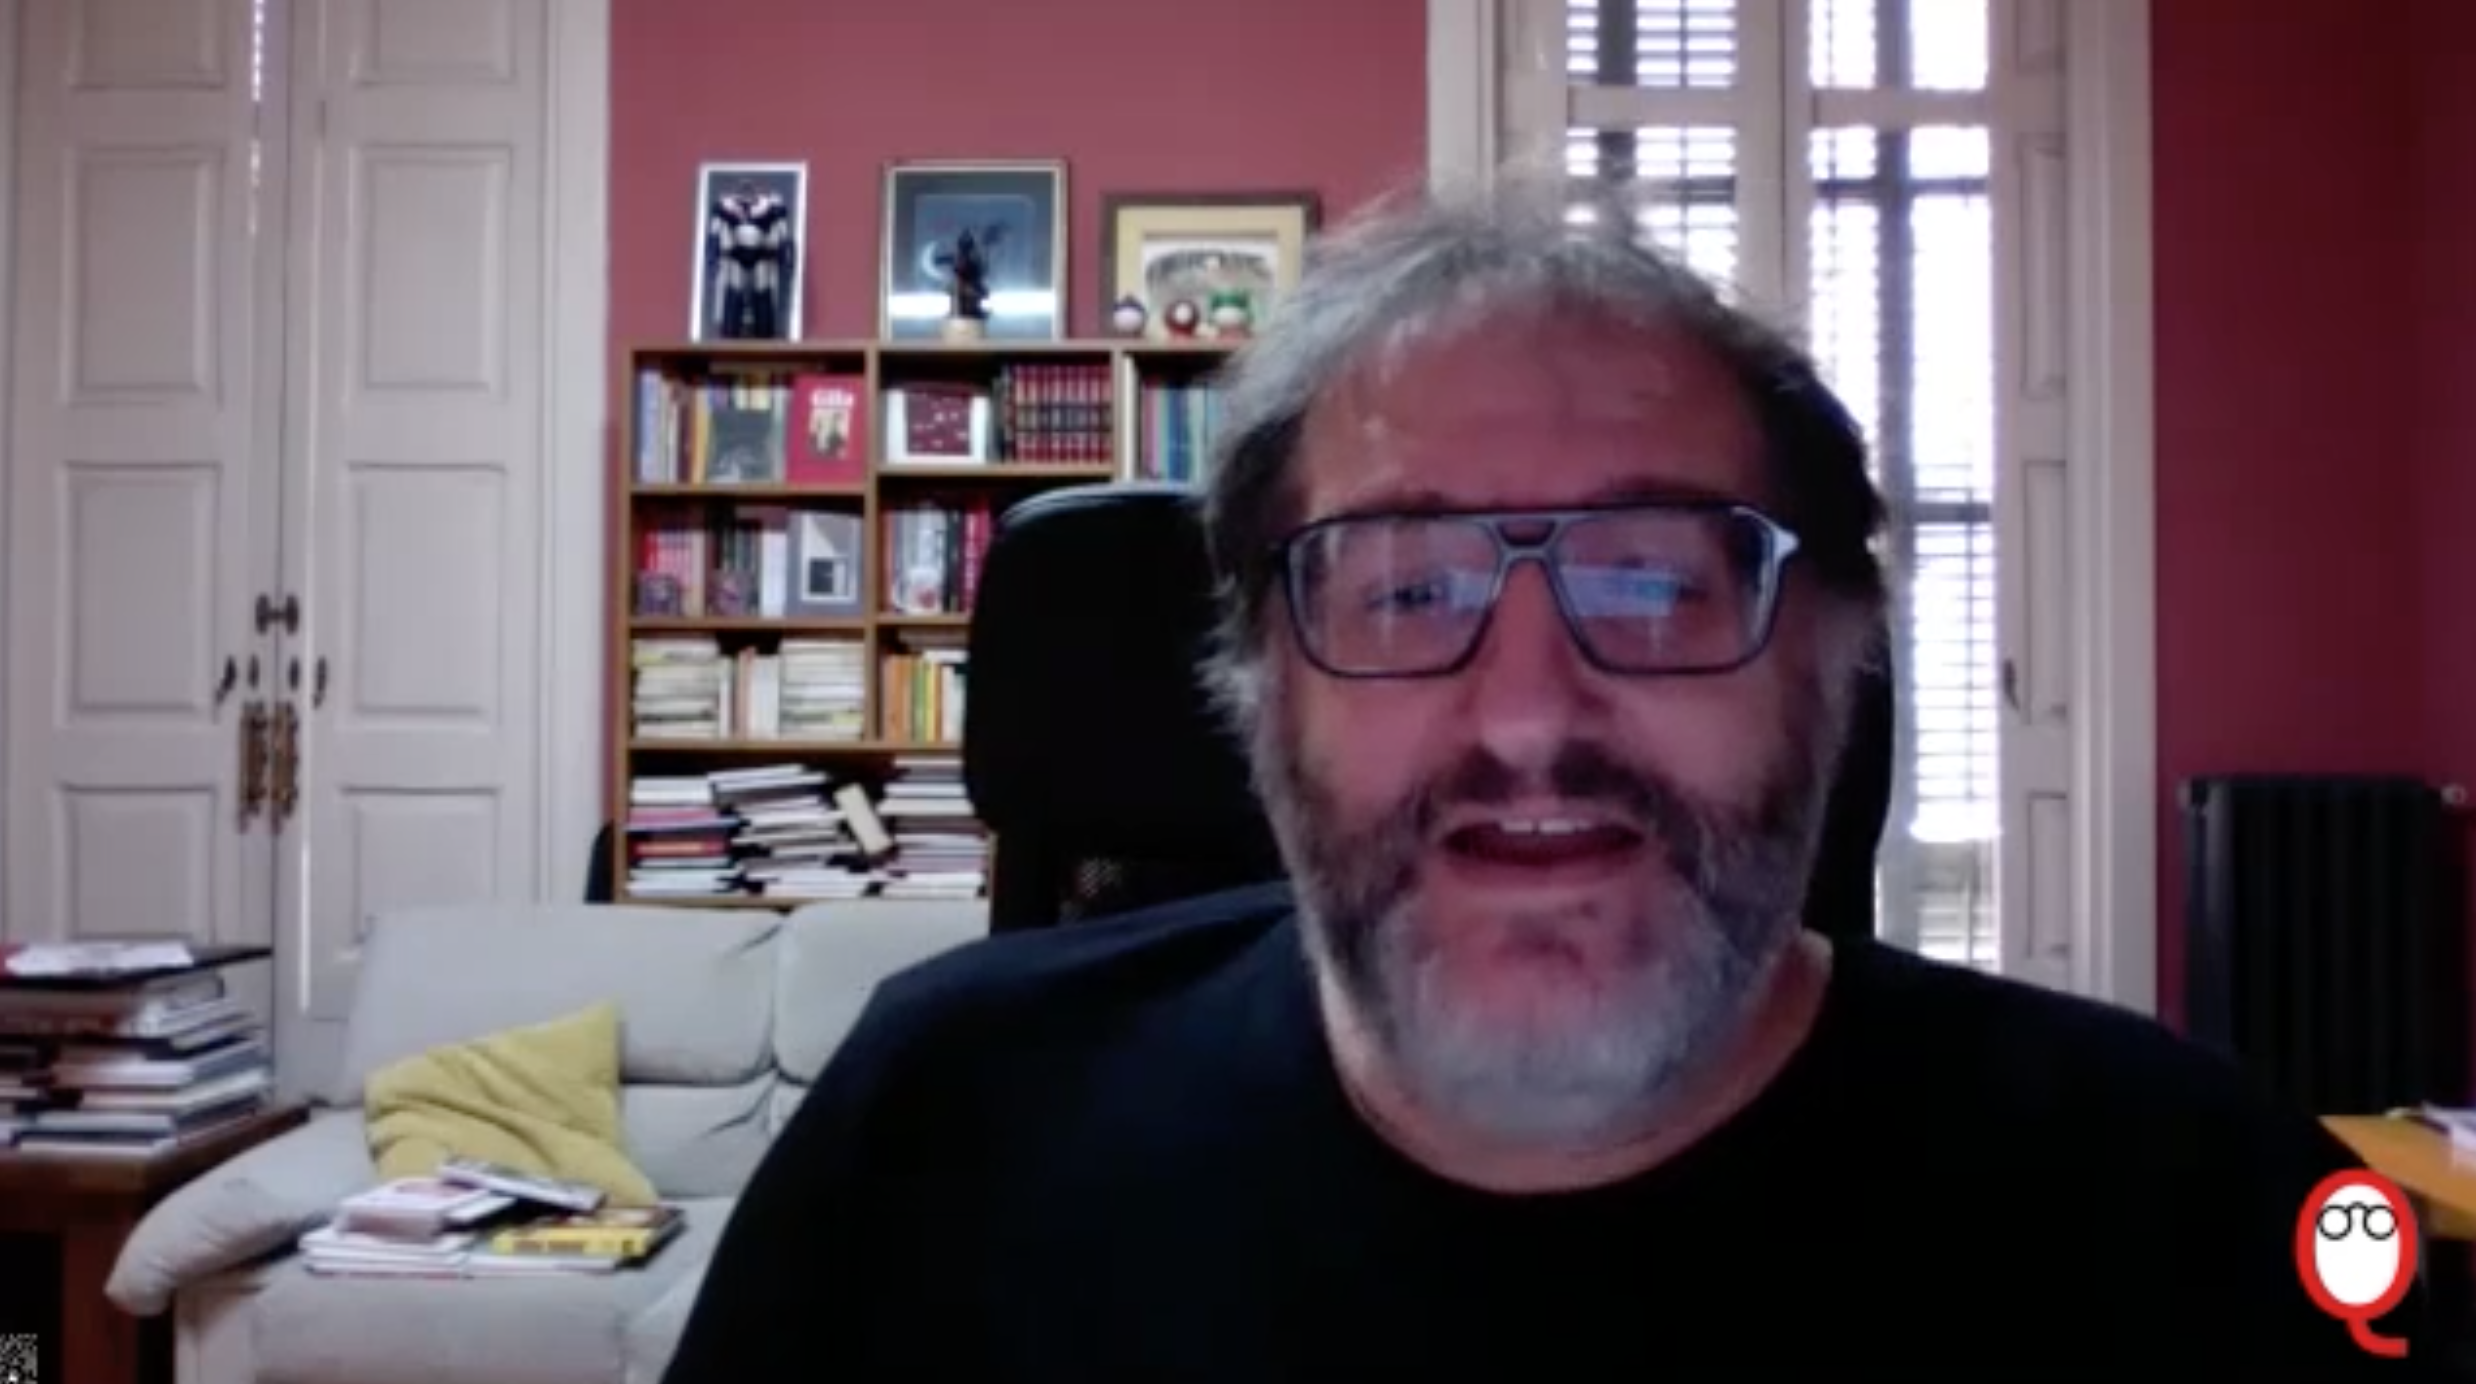 El humorista gráfico Manel Fontdevila responde a nuestras preguntas sobre el humor